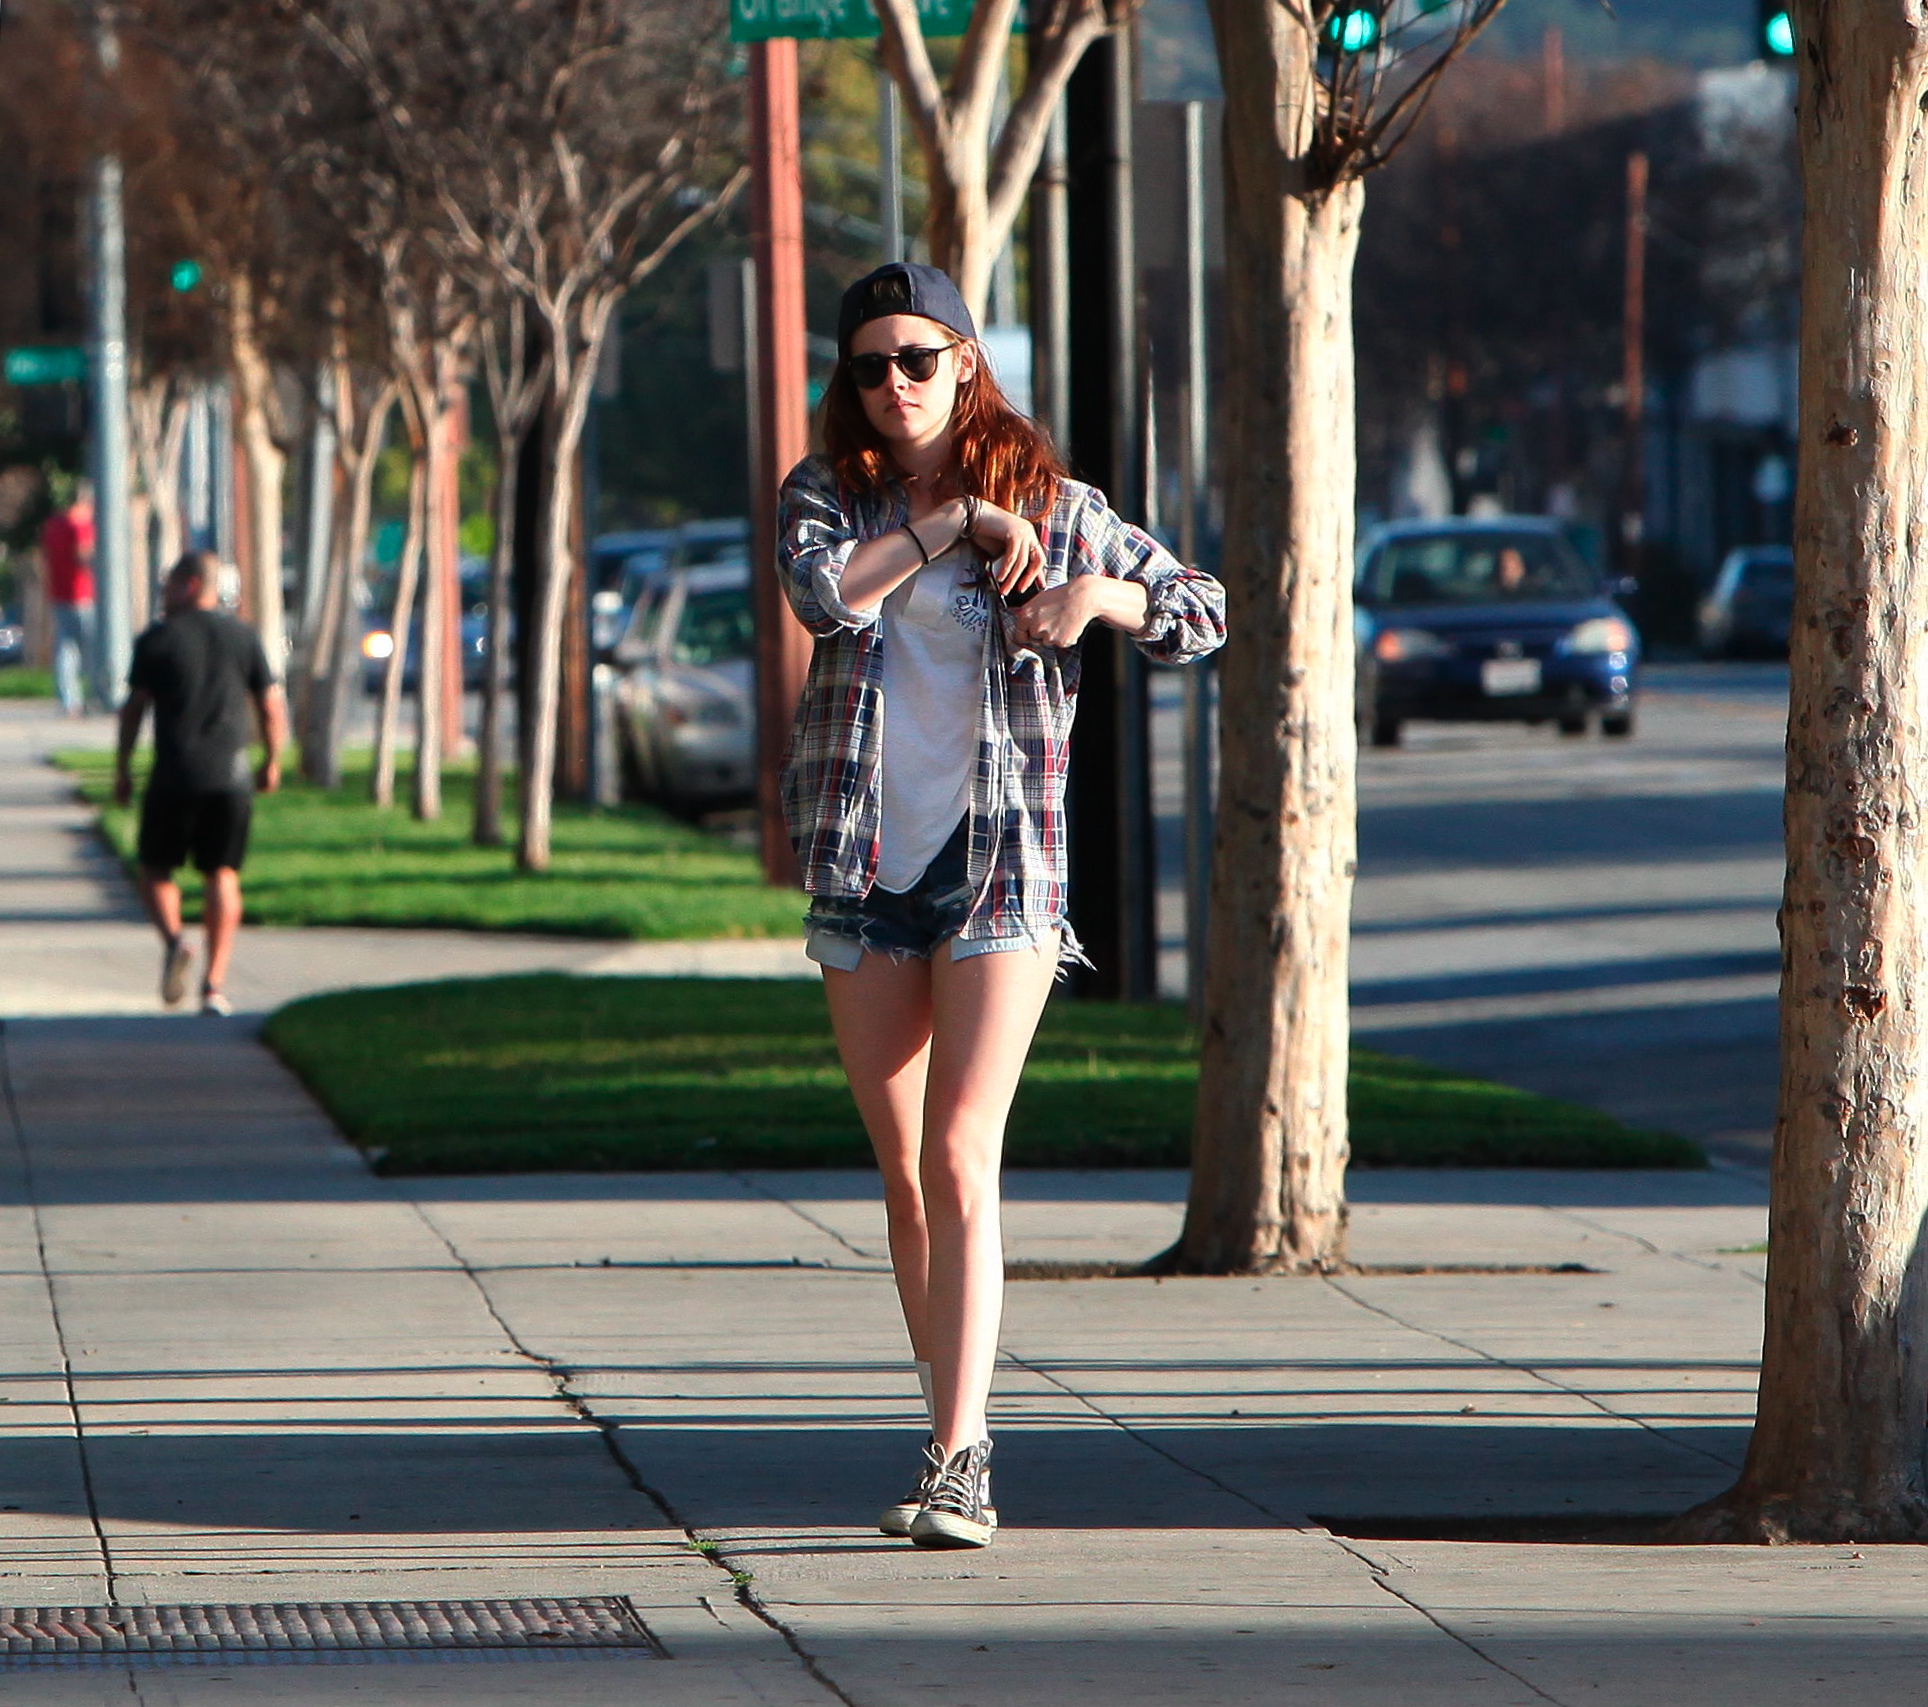 Гуляю в шортах. Кристен Стюарт в шортах. Девушка гуляет в шортах. Девочка гуляет по набережной в шортиках. Девушки на улице папарацци.